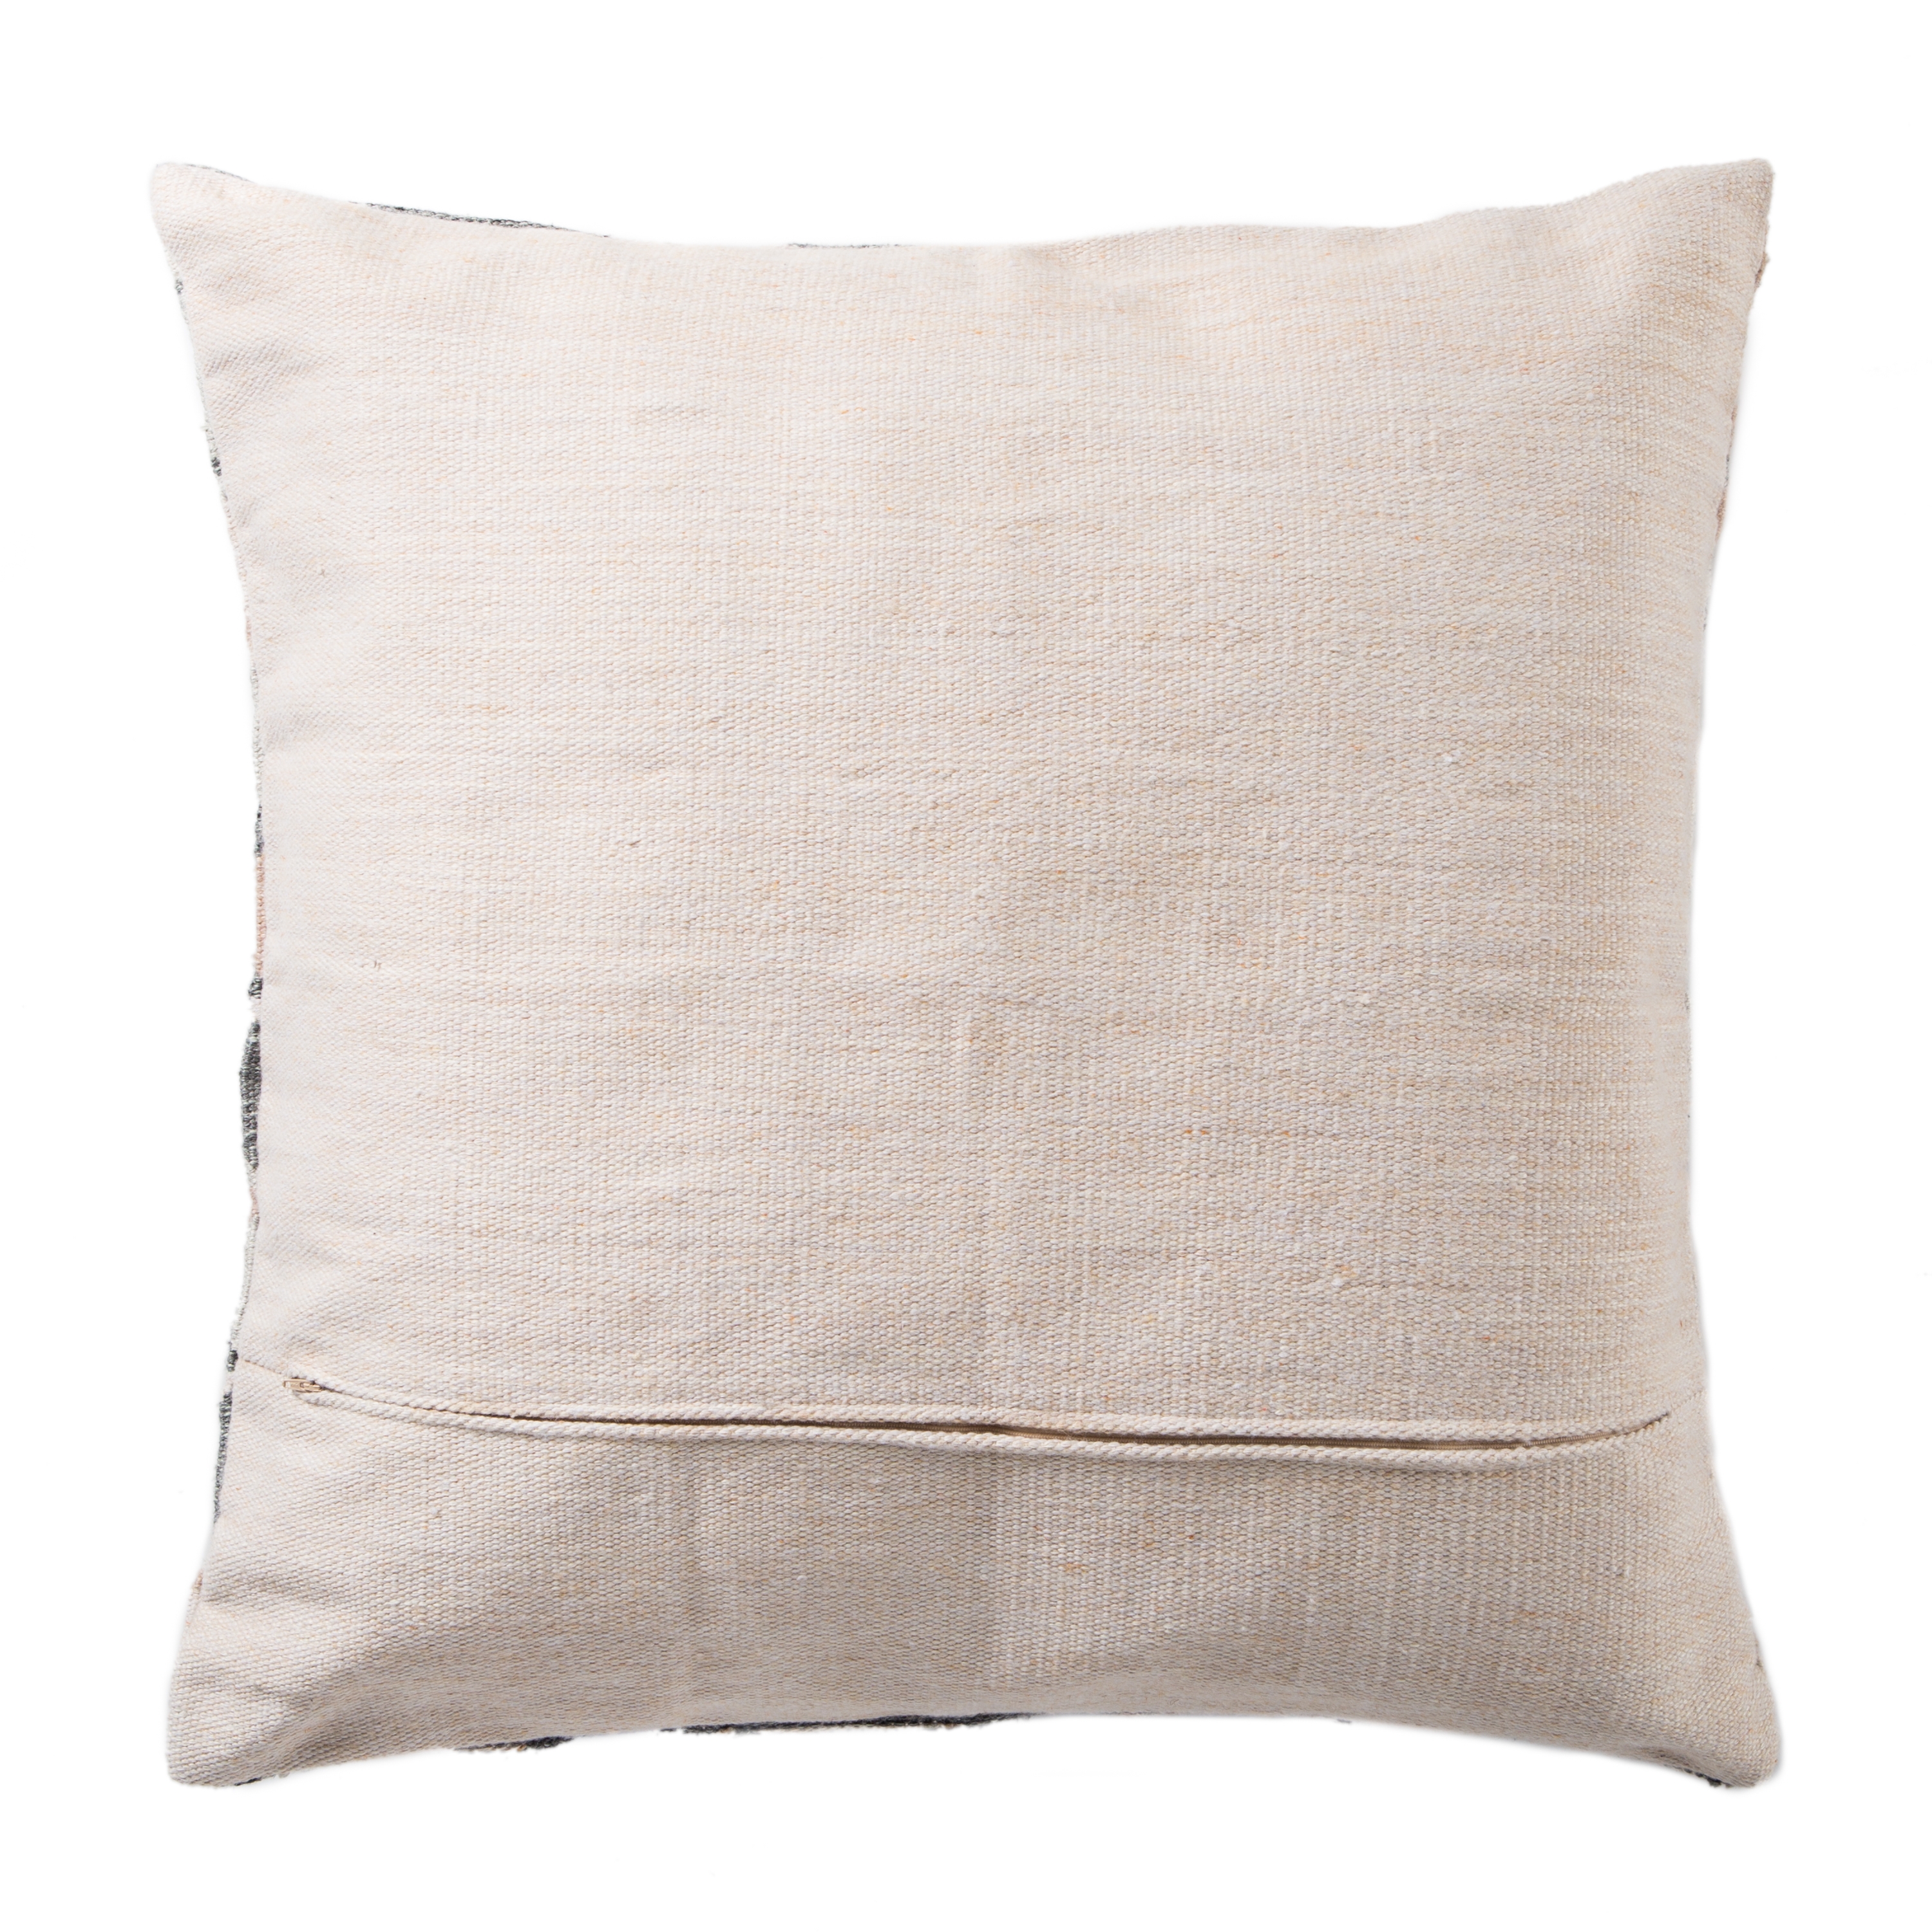 Design (US) Cream 32"X32" Pillow - Image 1